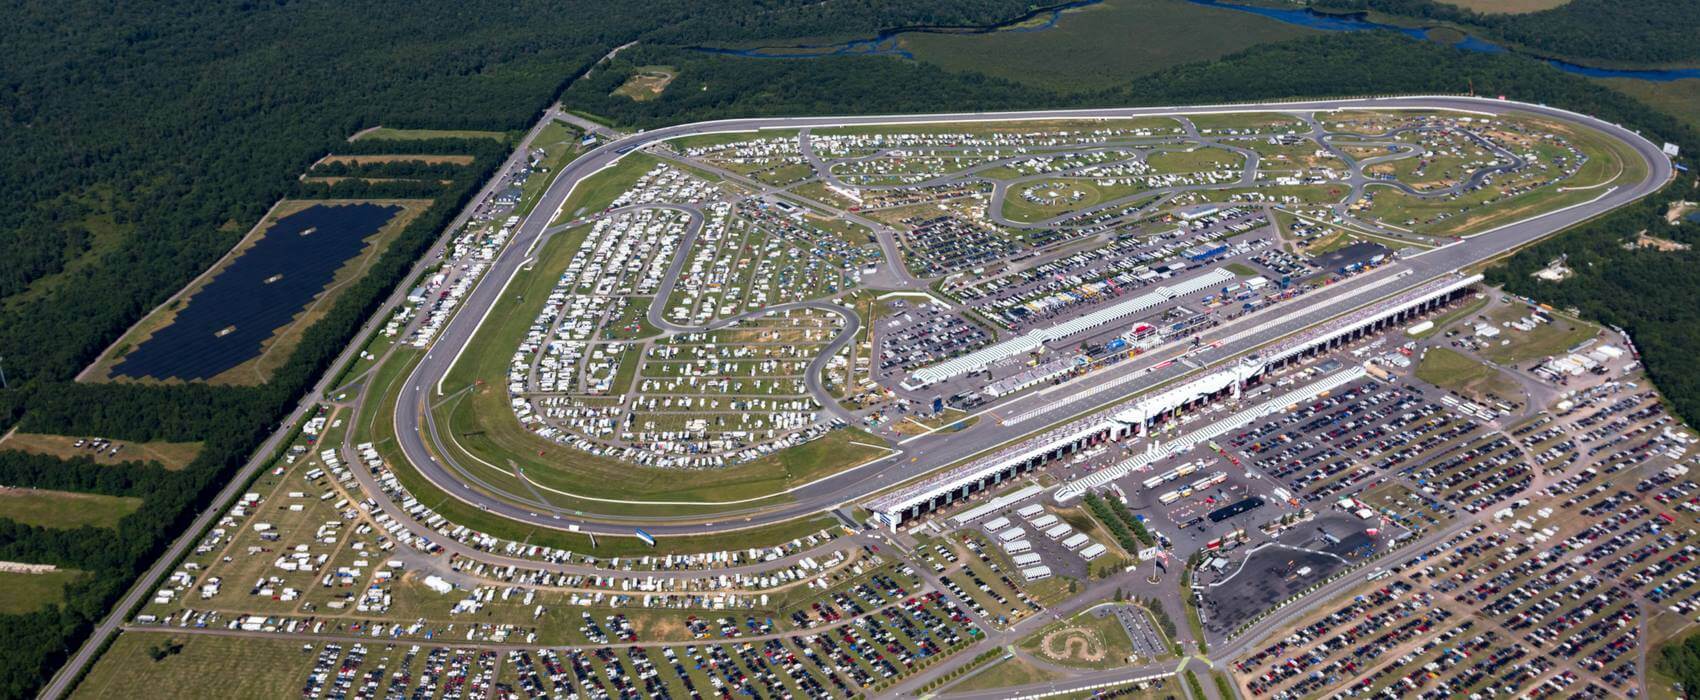 Pocono Raceway Aerial View